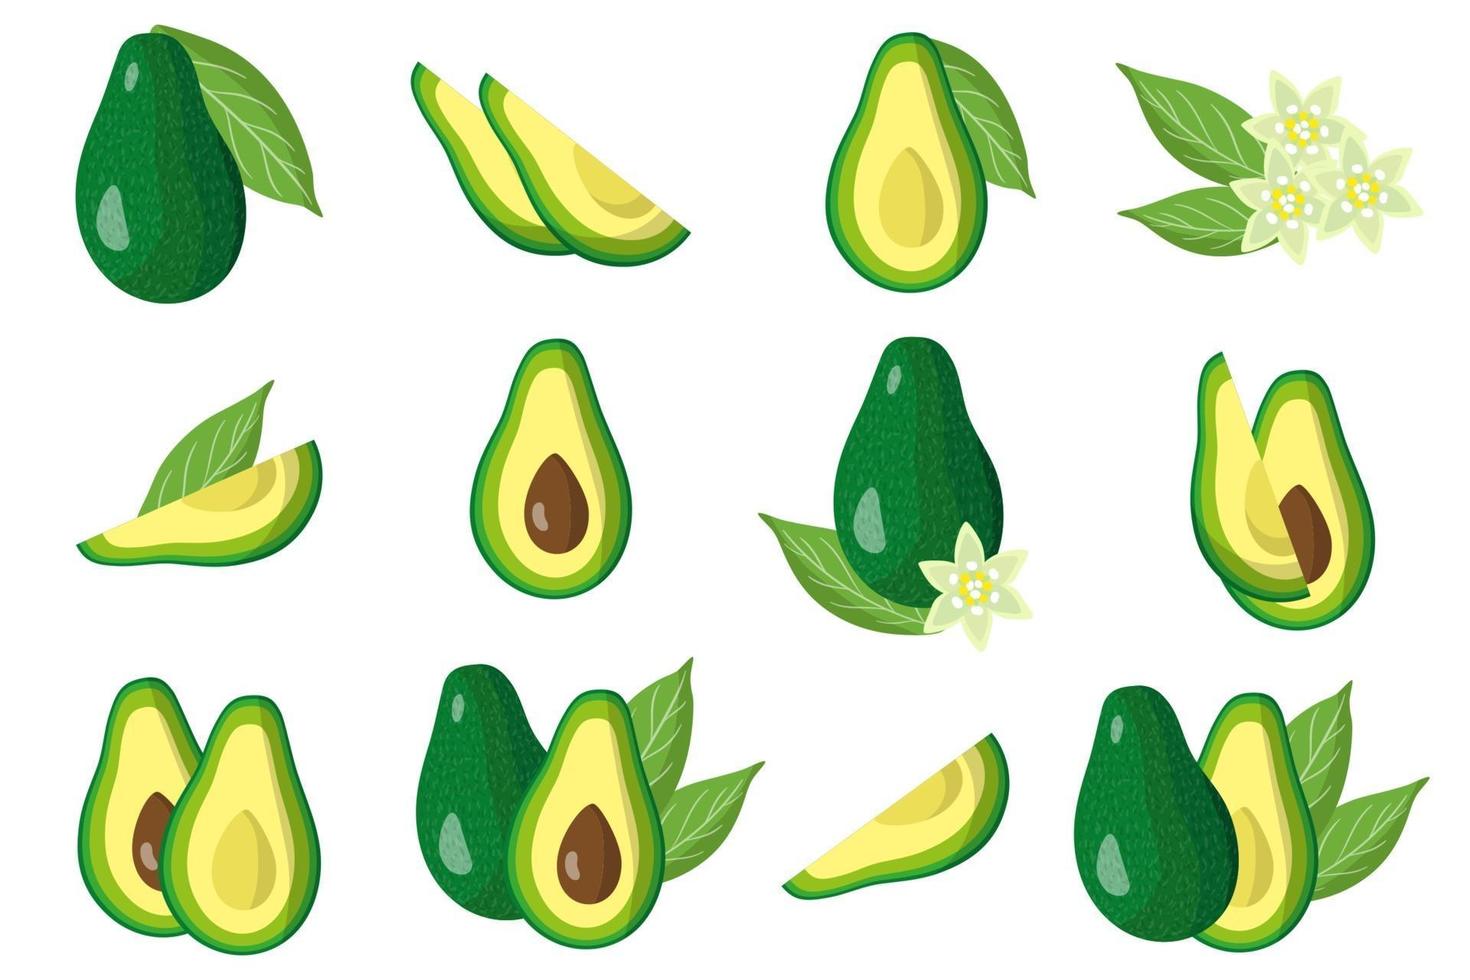 Satz Illustrationen mit exotischen Früchten, Blumen und Blättern der Avocado lokalisiert auf einem weißen Hintergrund. vektor